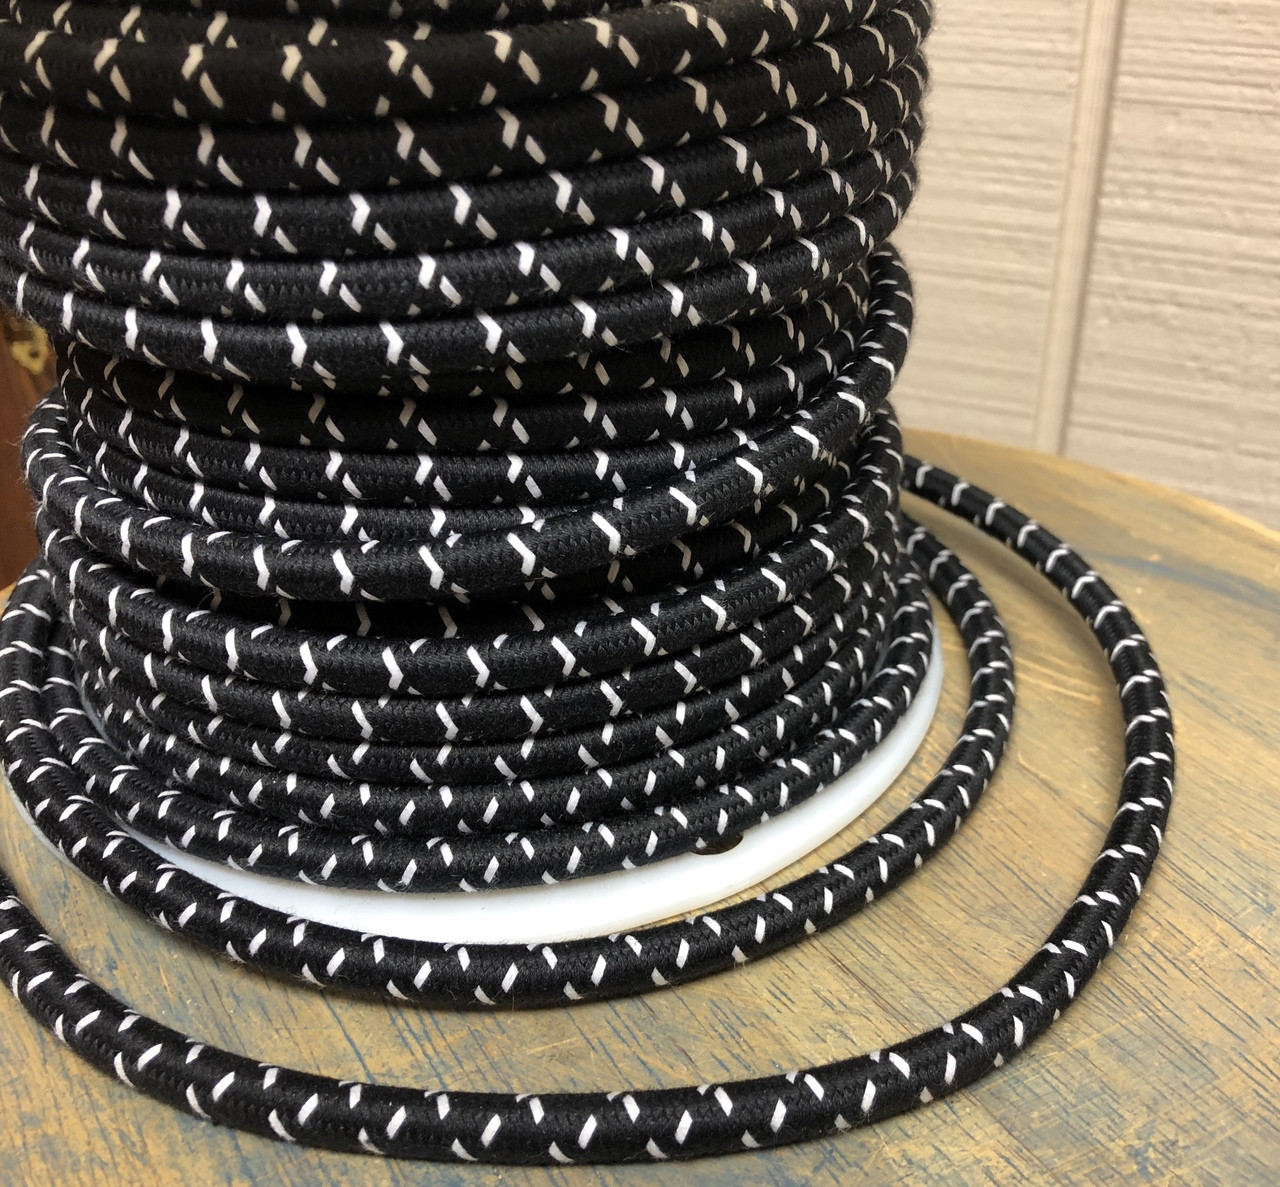 Black w/ White Cross-Stitch Tracer Round Cloth Covered 3-Wire Cord, Cotton  - PER FOOT